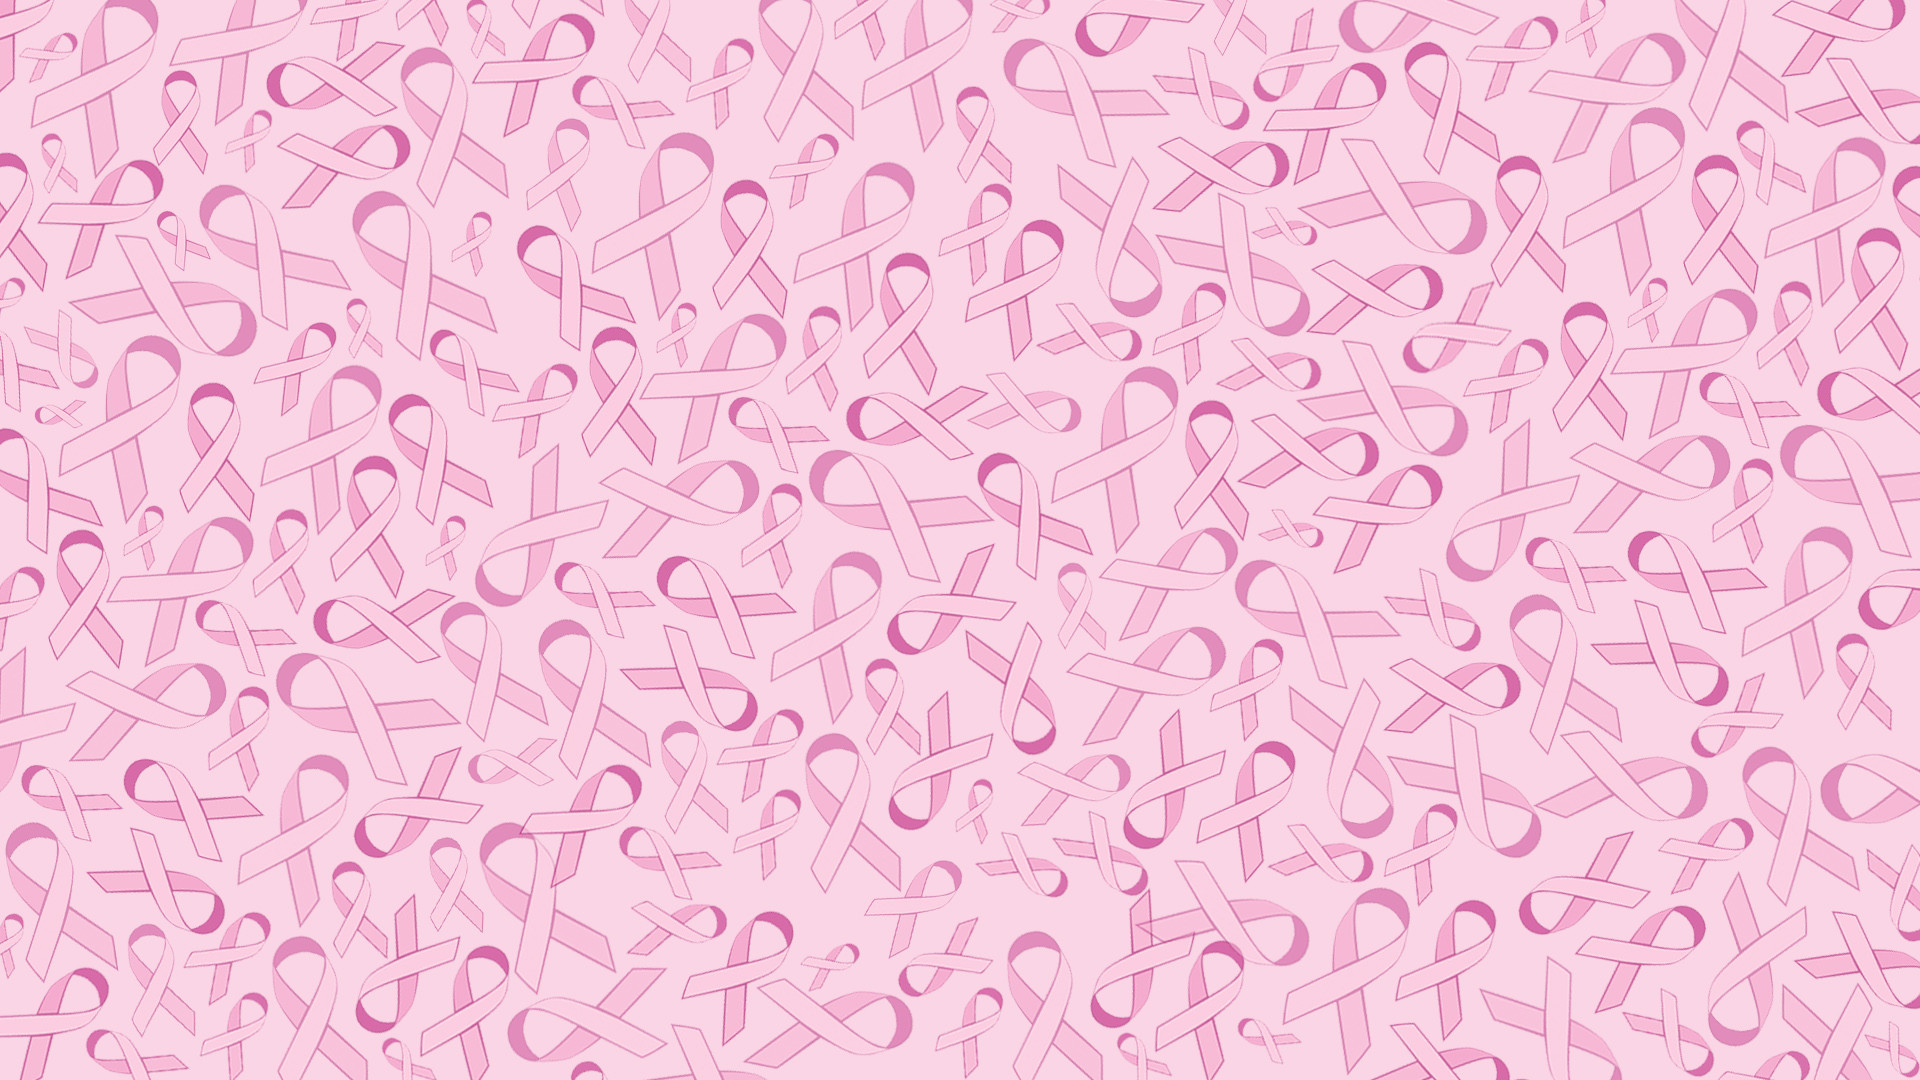 Breast Cancer Awareness Desktop Wallpaper 41 Images HD Wallpapers Download Free Images Wallpaper [wallpaper981.blogspot.com]